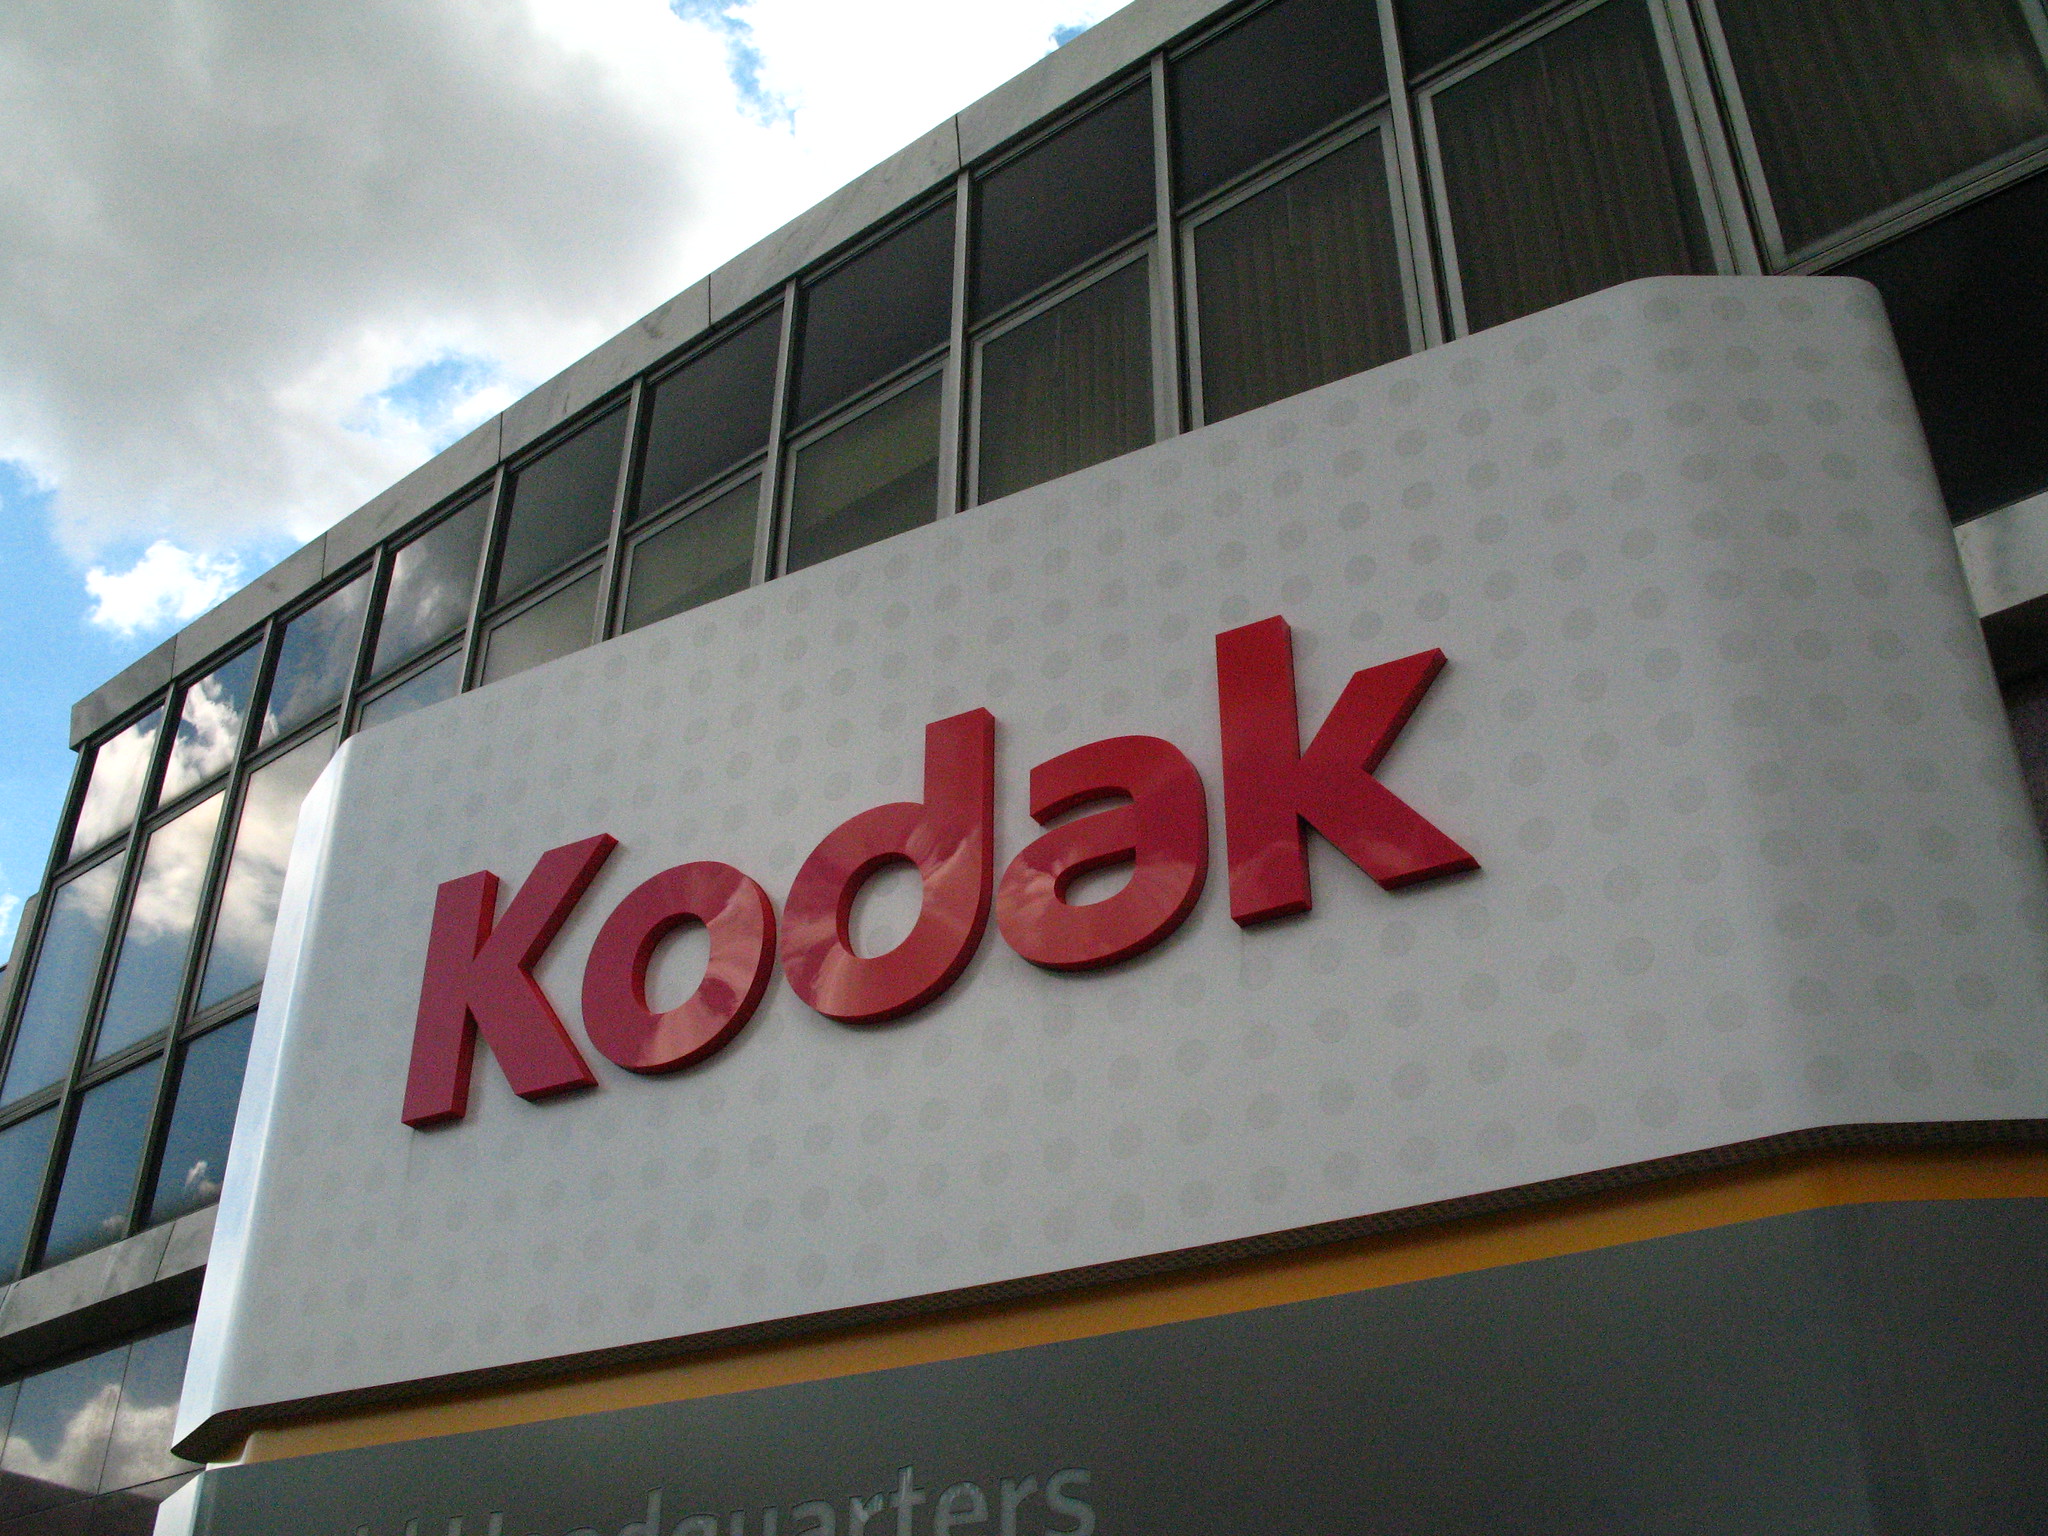 A Kodak foi uma das maiores produtoras de filmes e artigos relacionados ao mundo da fotografia